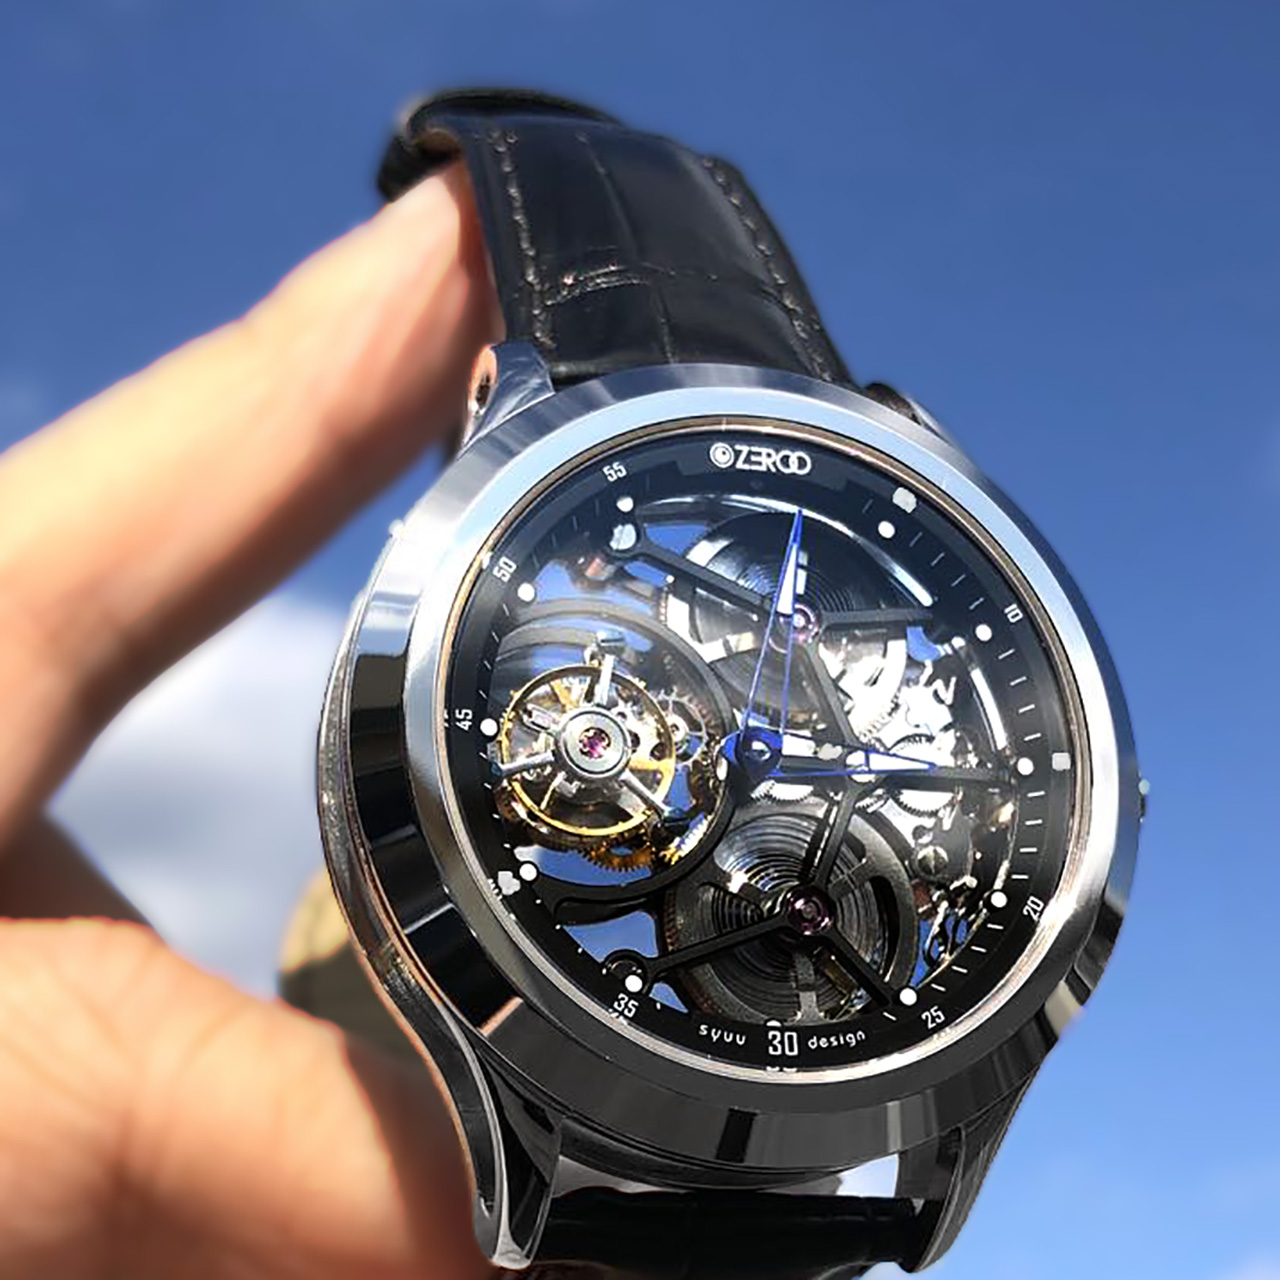 機械式時計の美しさがわかるフルスケルトンのトゥールビヨン。ひたすら眺めていたい「ZEROO T1 THE ARCHER」クラウドファンディング